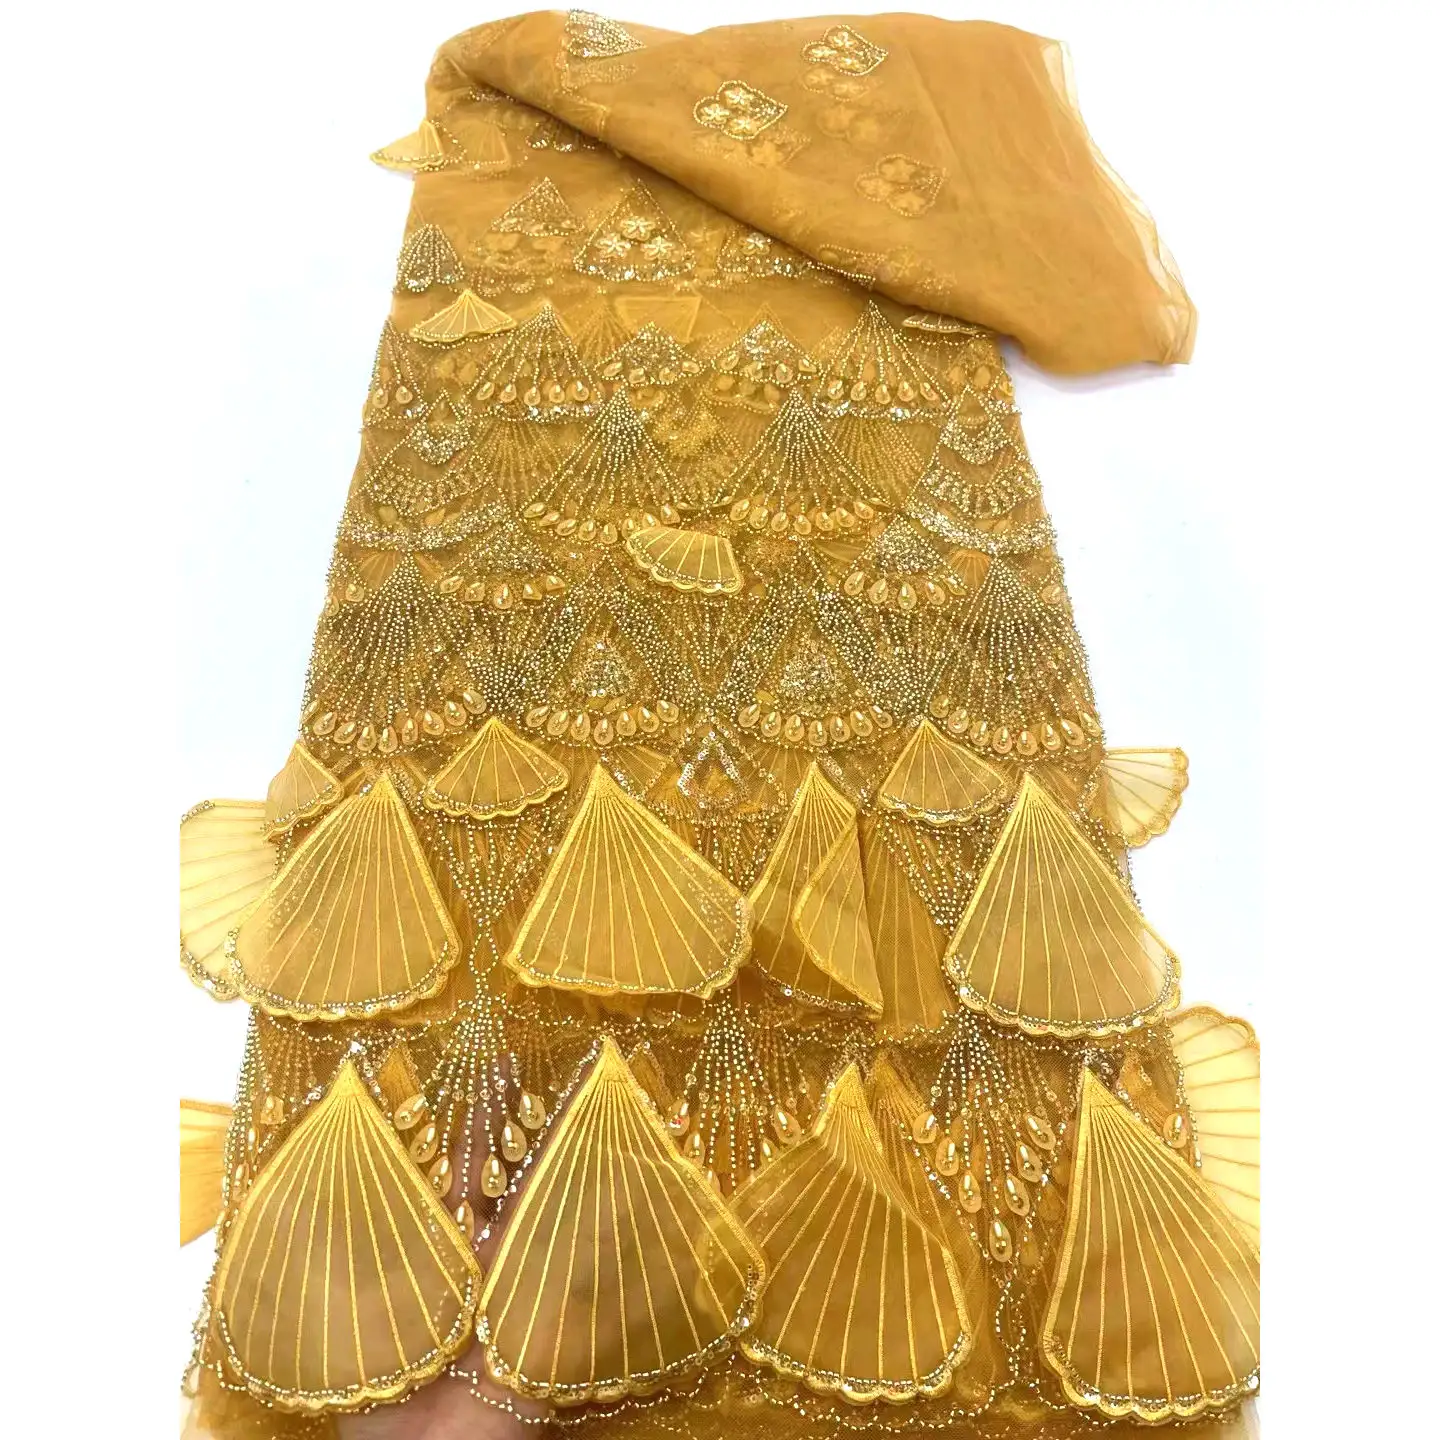 Commercio all'ingrosso elegante di lusso lucido con paillettes e perline Tulle maglia tessuto ricamato per decorazione di abbigliamento